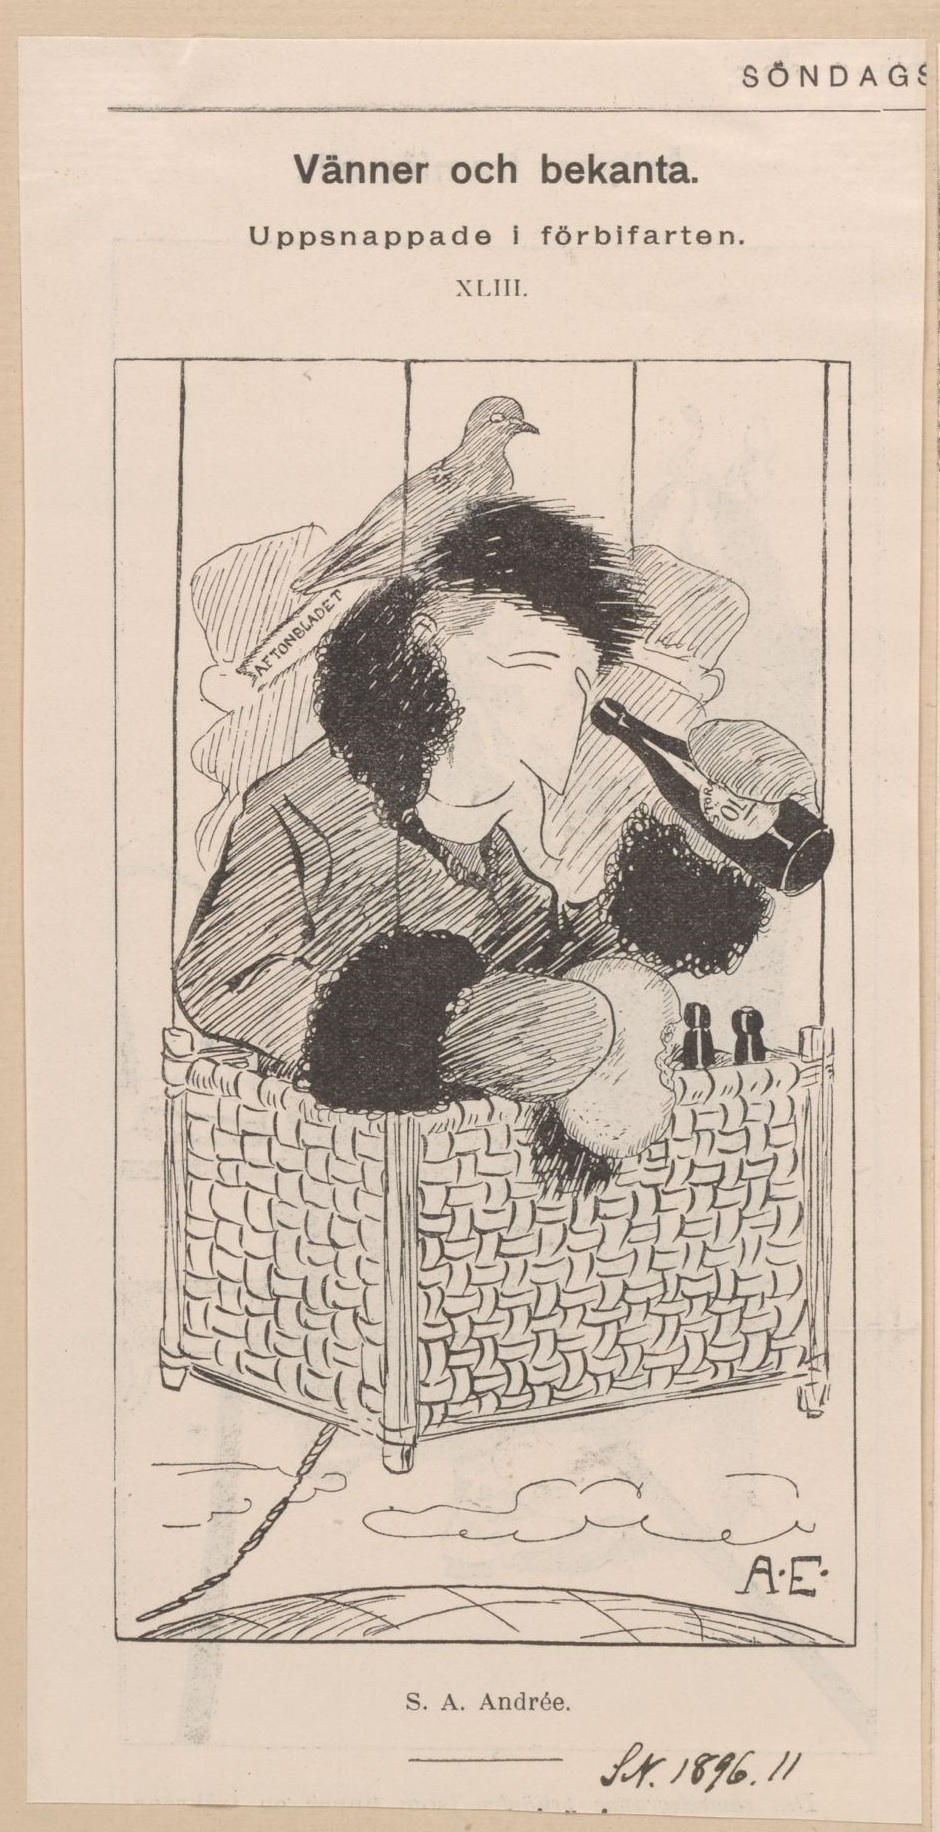 Karikatyr av S. A. Andrée sittande i en luftballong iklädd pälsmössa och rock med pälskrage. I ena handen håller han en brödbit och i den andra en ölflaska, som han använder som kikare.